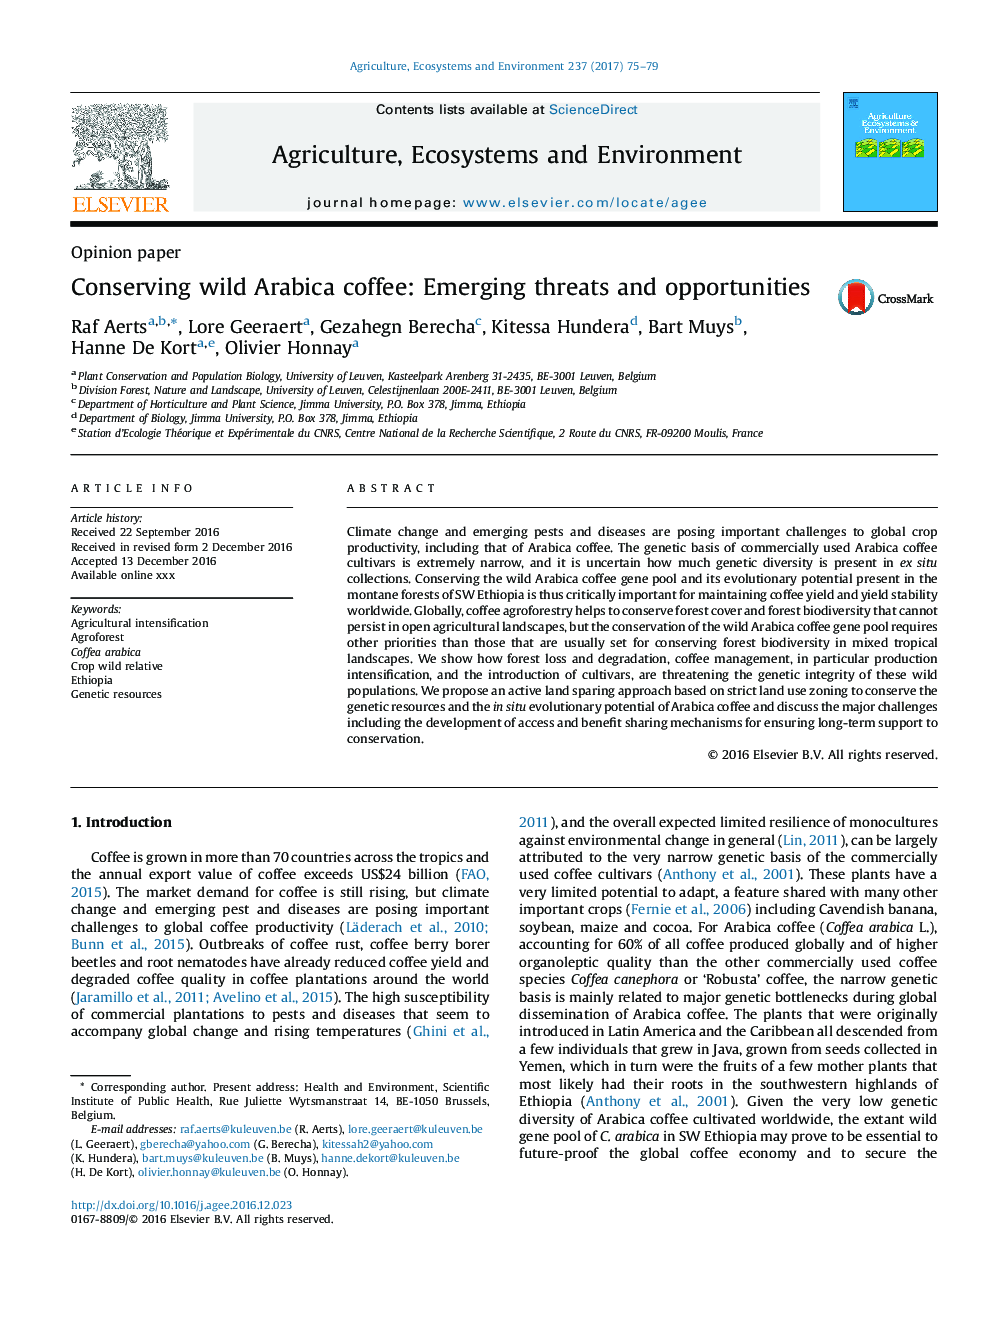 حفظ قهوه عربیکا وحشی: تهدیدات و فرصت های جدید 